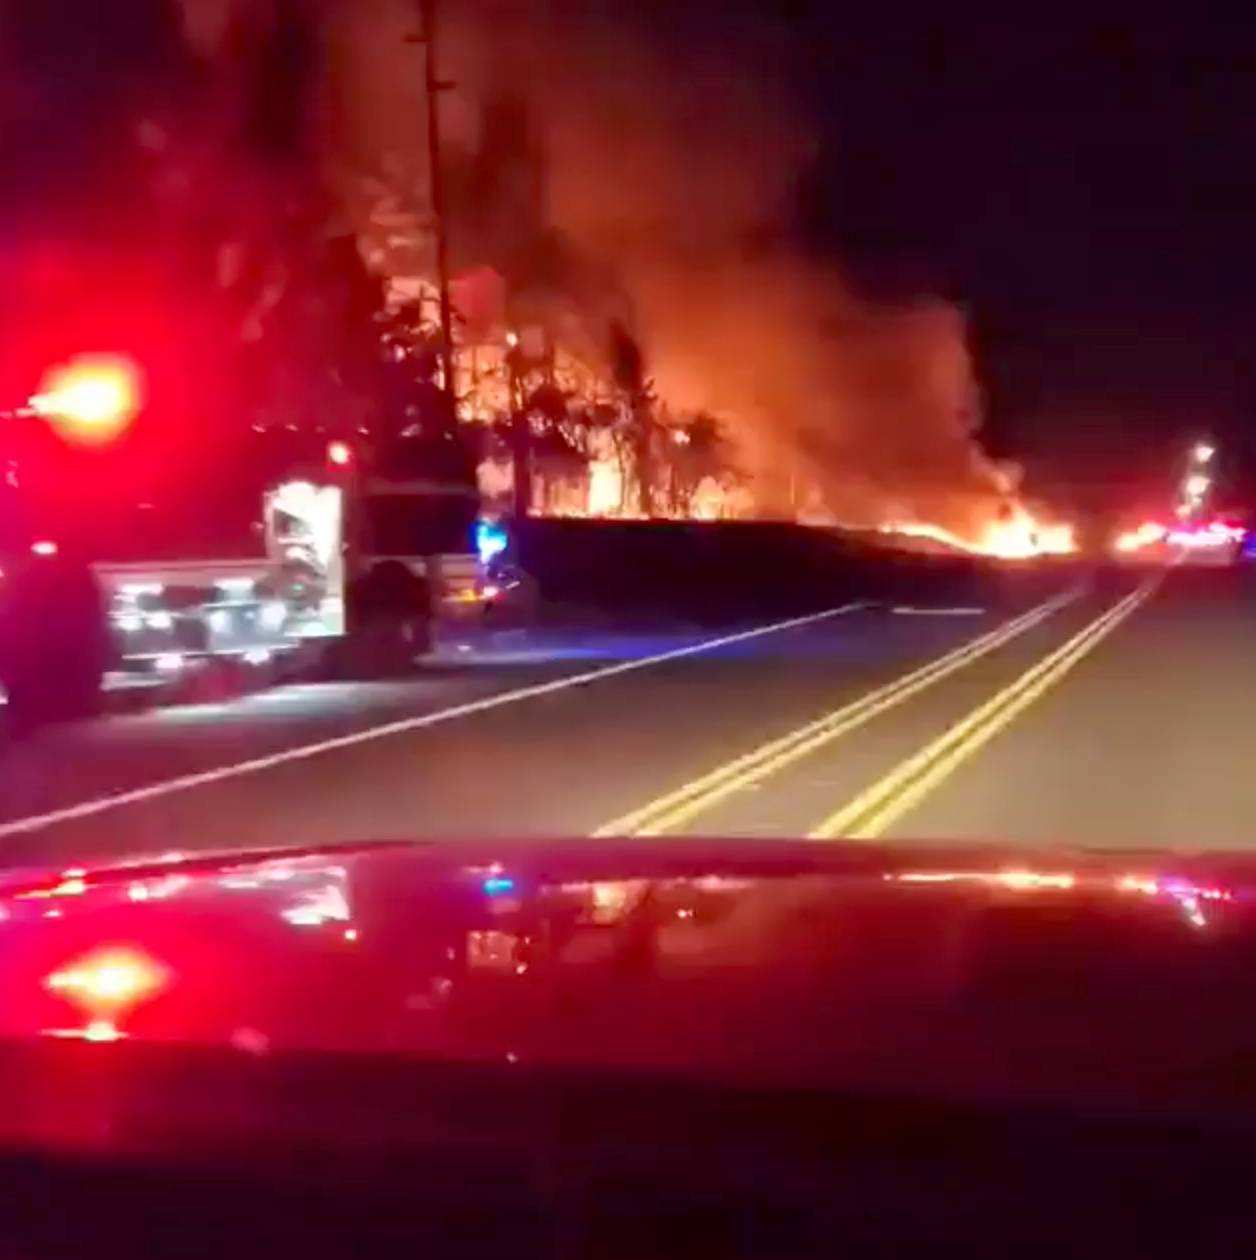 Vegetation is seen on fire along a side road in Molalla, Oregon